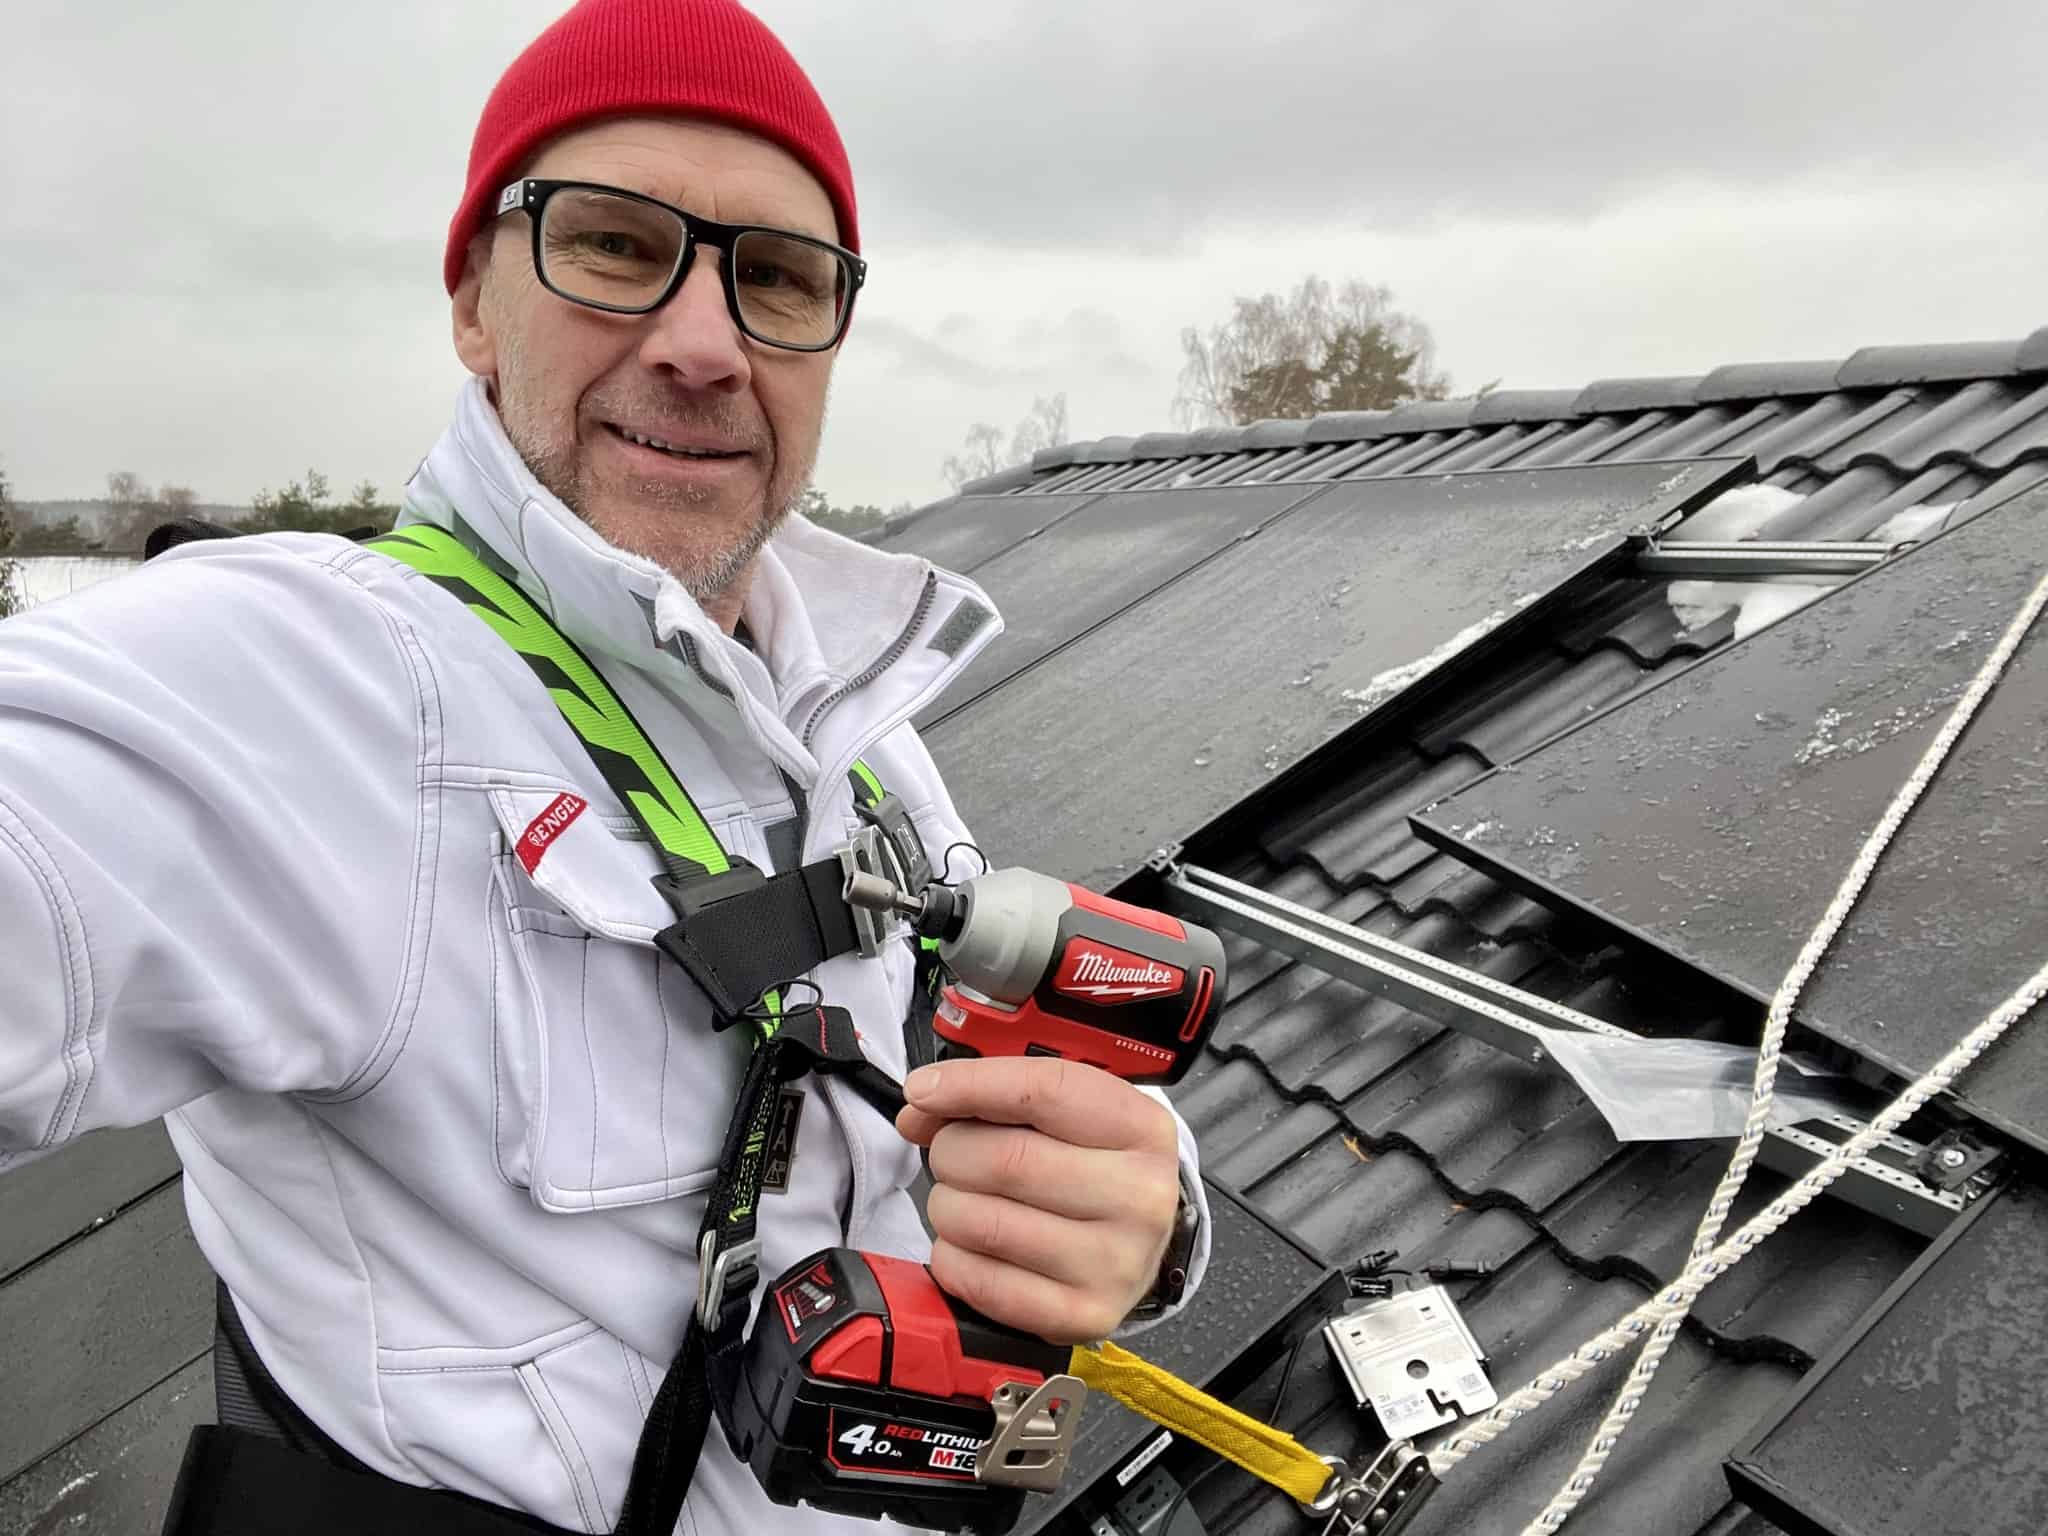 Referensjobb "Hans in action! - På taket och installerar solpaneler." utfört av Takel Energy AB